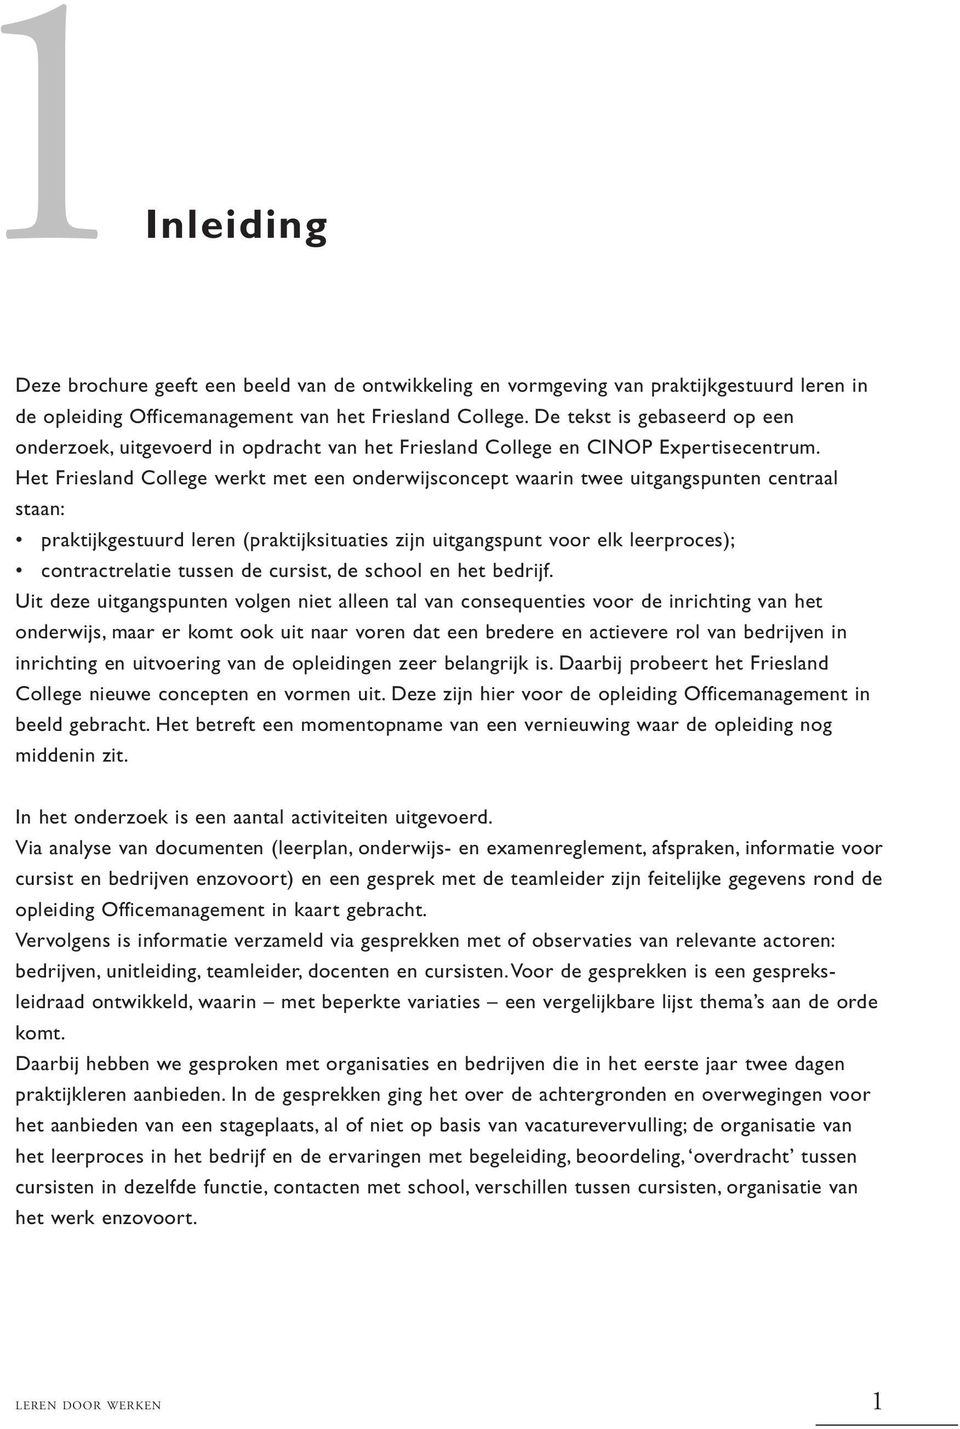 Het Friesland College werkt met een onderwijsconcept waarin twee uitgangspunten centraal staan: praktijkgestuurd leren (praktijksituaties zijn uitgangspunt voor elk leerproces); contractrelatie